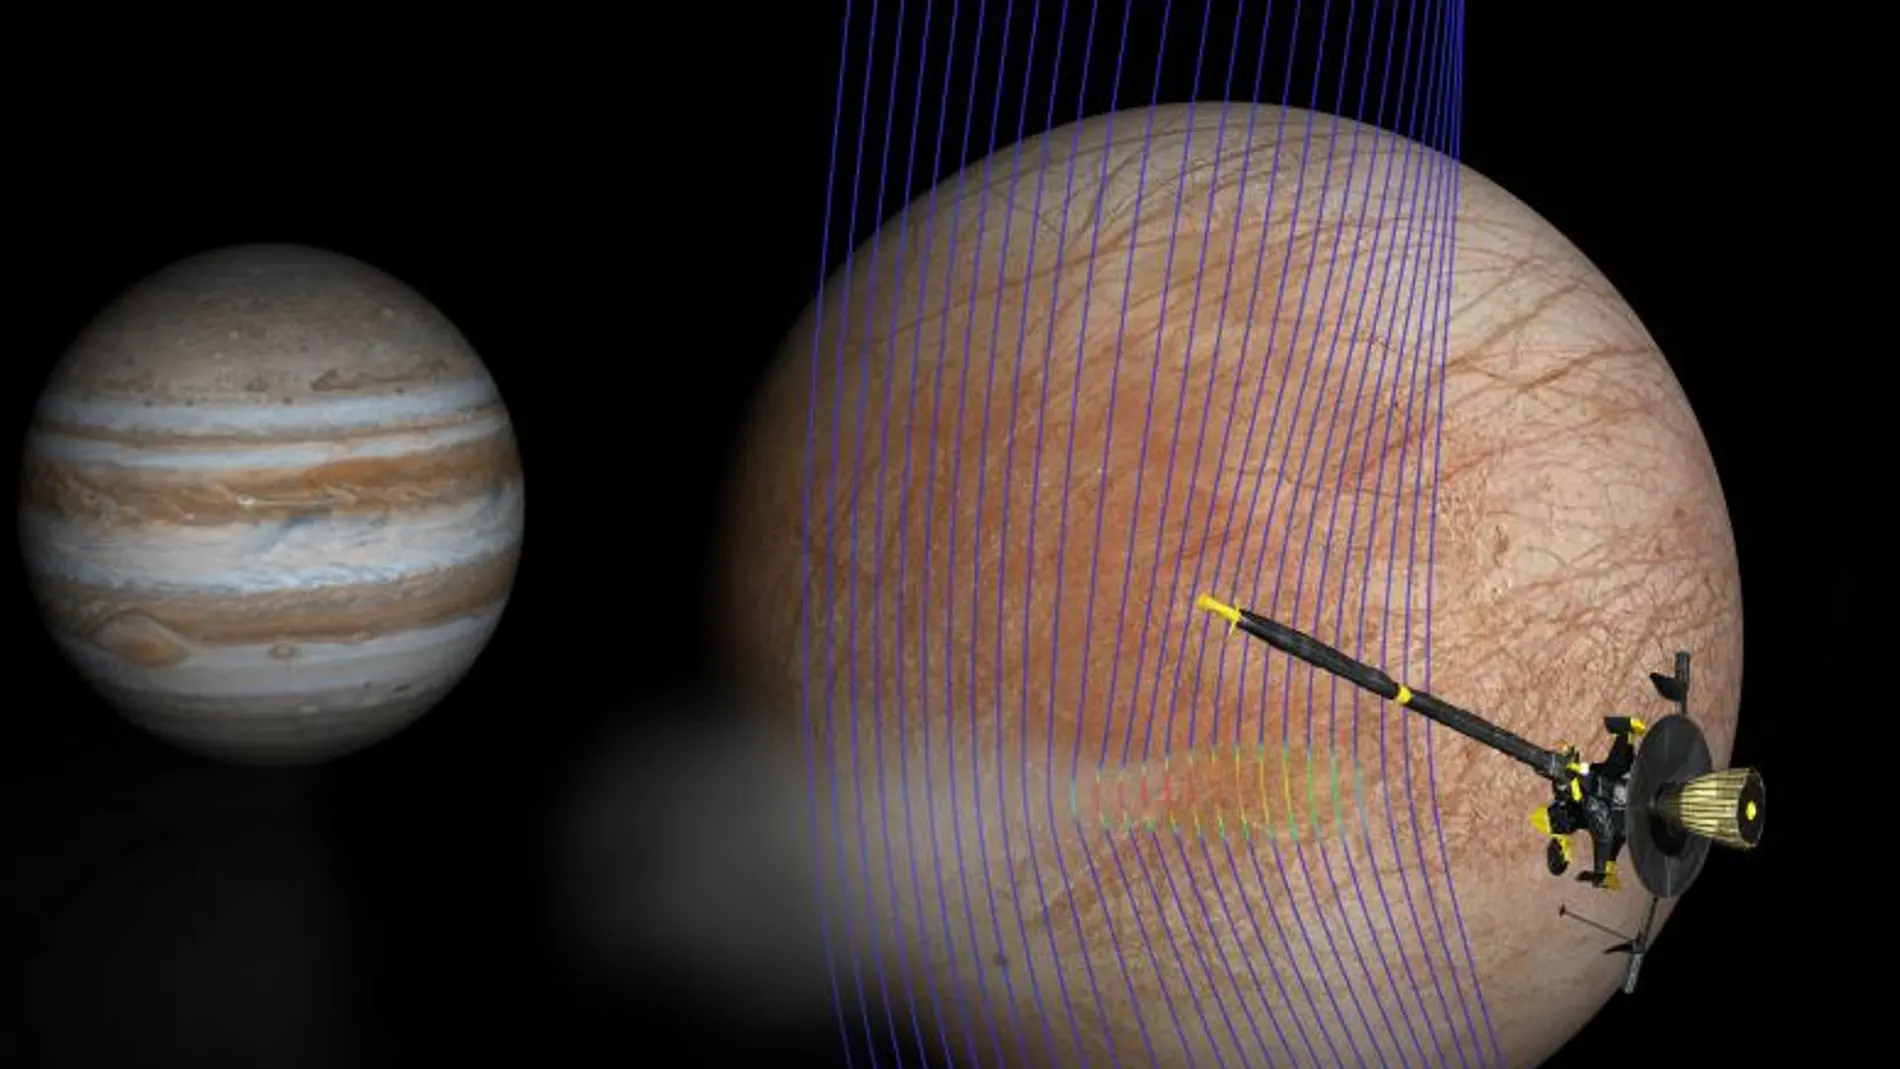 Ilustración artística de Júpiter y Europa (en primer plano) con la nave espacial Galileo después de haber sobrevolado una pluma que sale de la superficie de Europa. Las líneas del campo magnético (representadas en azul) muestran cómo la pluma interactúa con el flujo ambiental del plasma de Júpiter. Los colores rojos en las líneas muestran áreas más densas de plasma. Credits: NASA/JPL-Caltech/Univ. of Michigan.